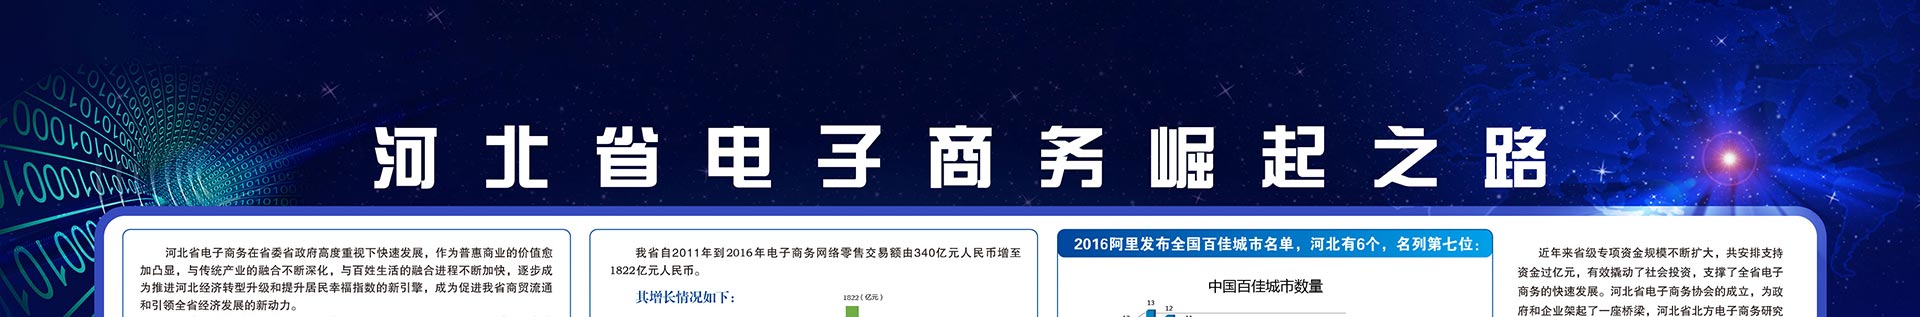 河北省电子商务示范园区、企业版图分布VR库 - jpg